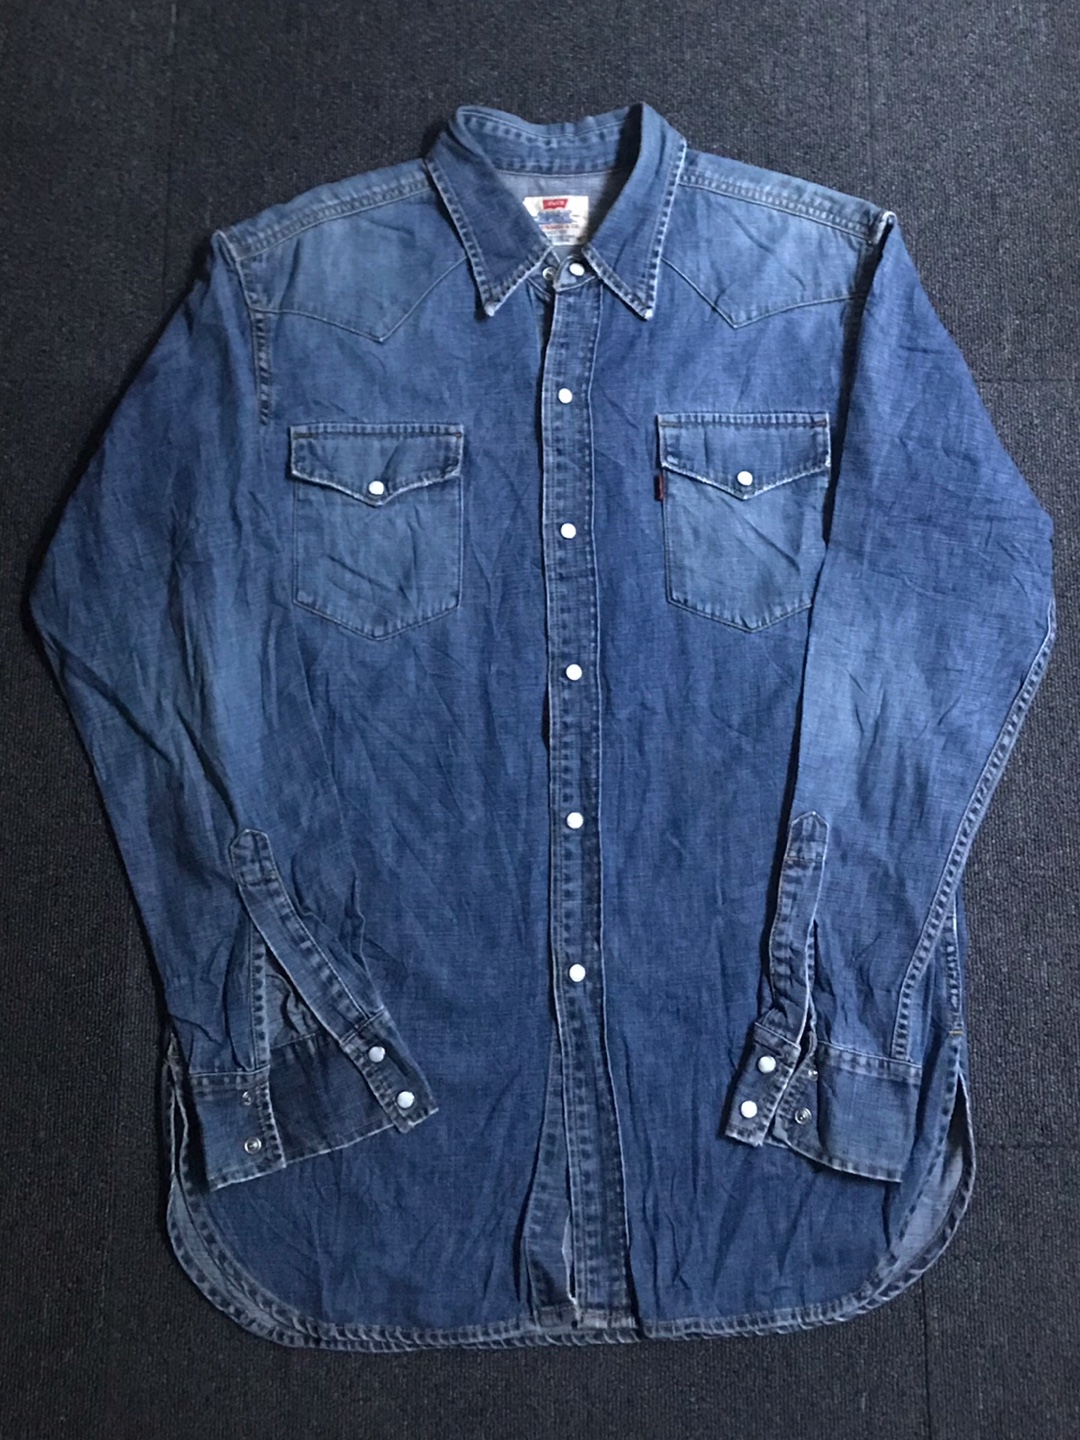 90s levis denim western shirt (M size, ~105 추천)